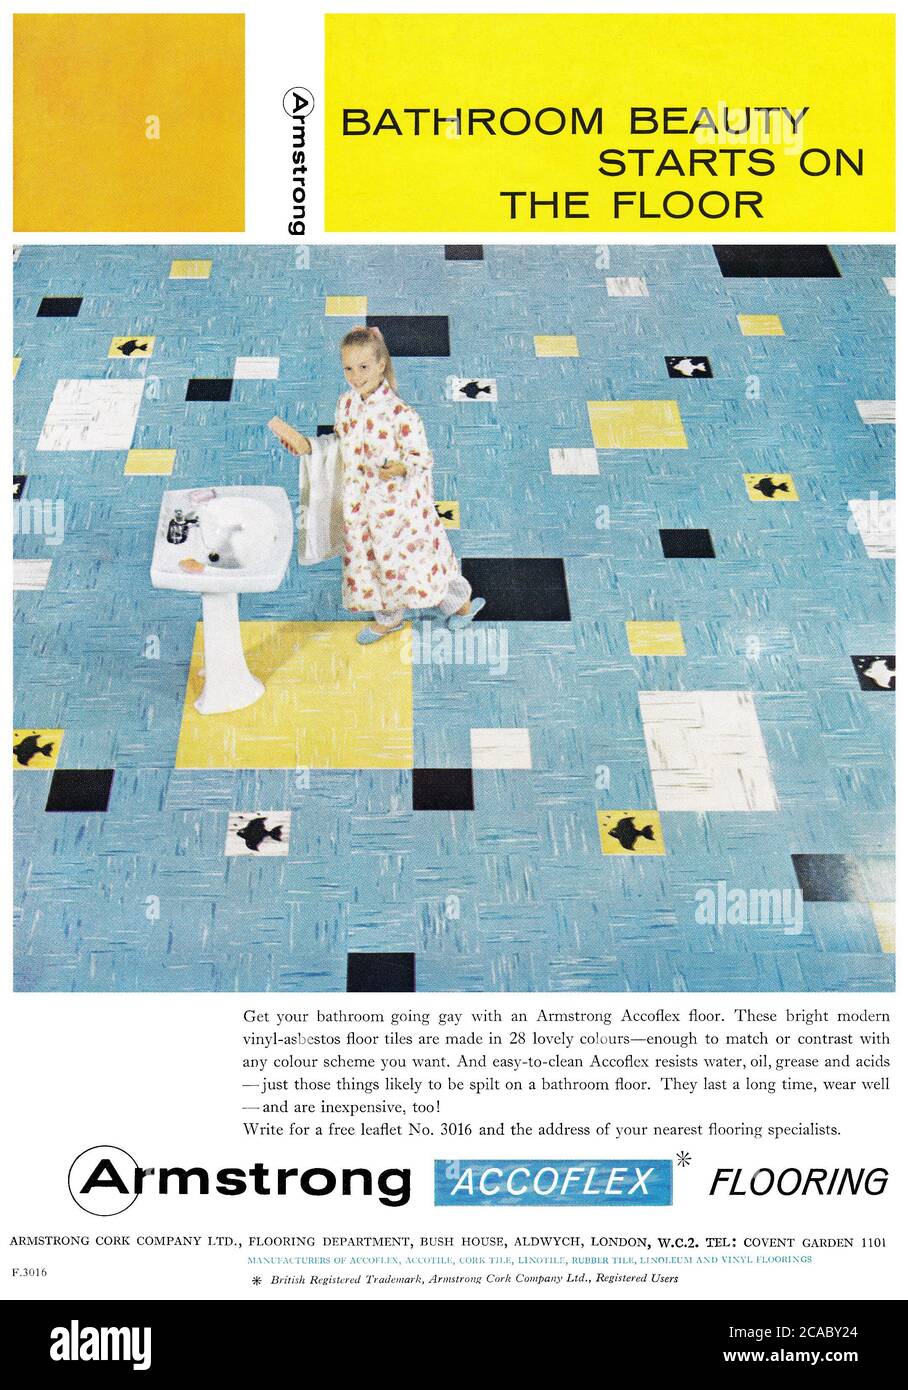 1961 Pubblicità britannica per pavimenti in vinile-amianto Armstrong Accoflex. Foto Stock